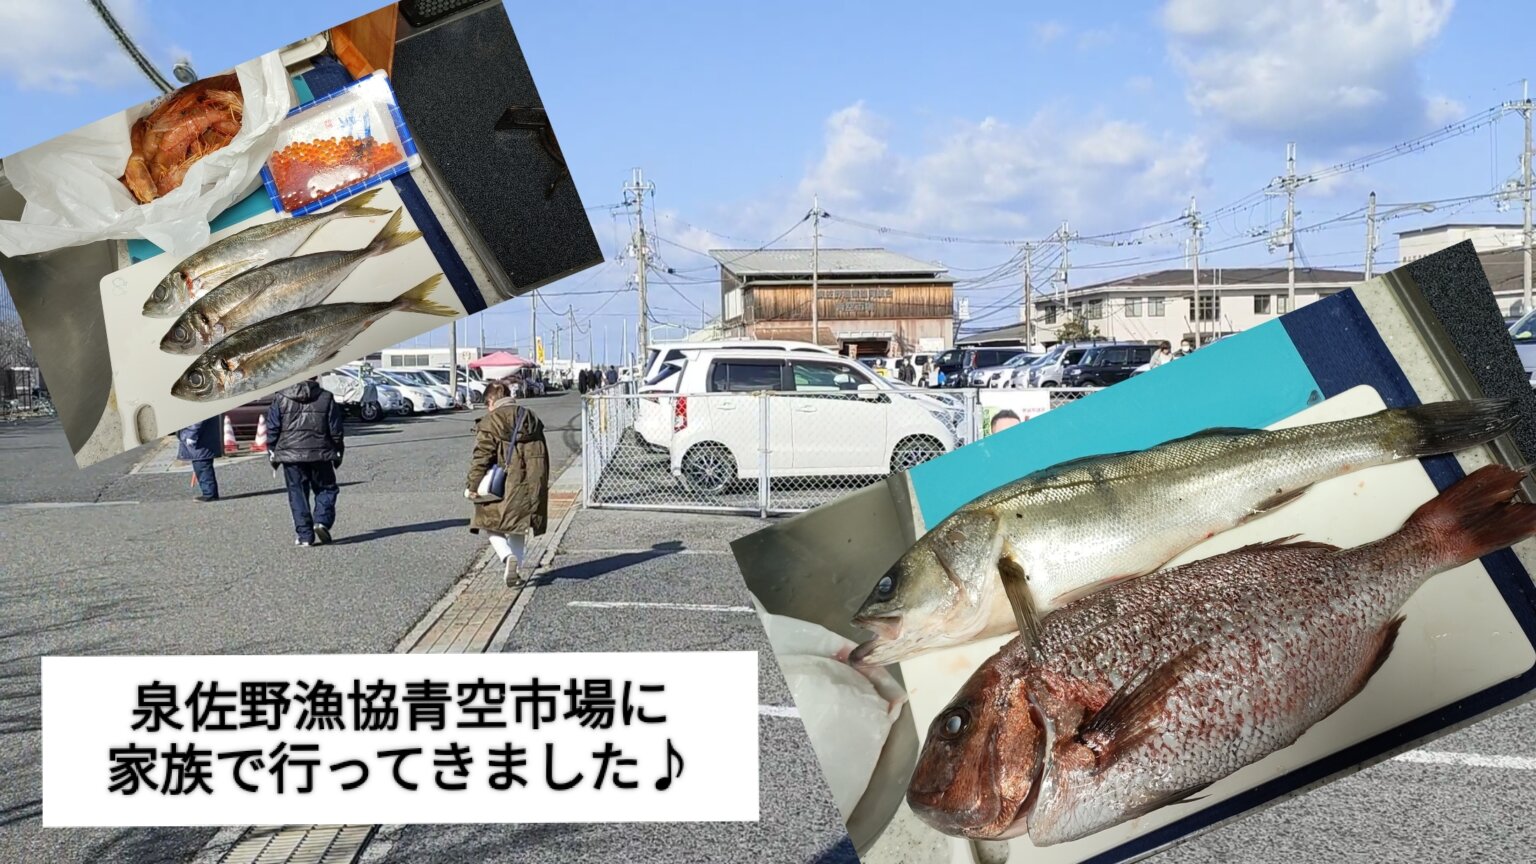 【おでかけ】泉佐野漁協青空市場に新鮮な魚を買いに行ってきました♪【鮮魚】